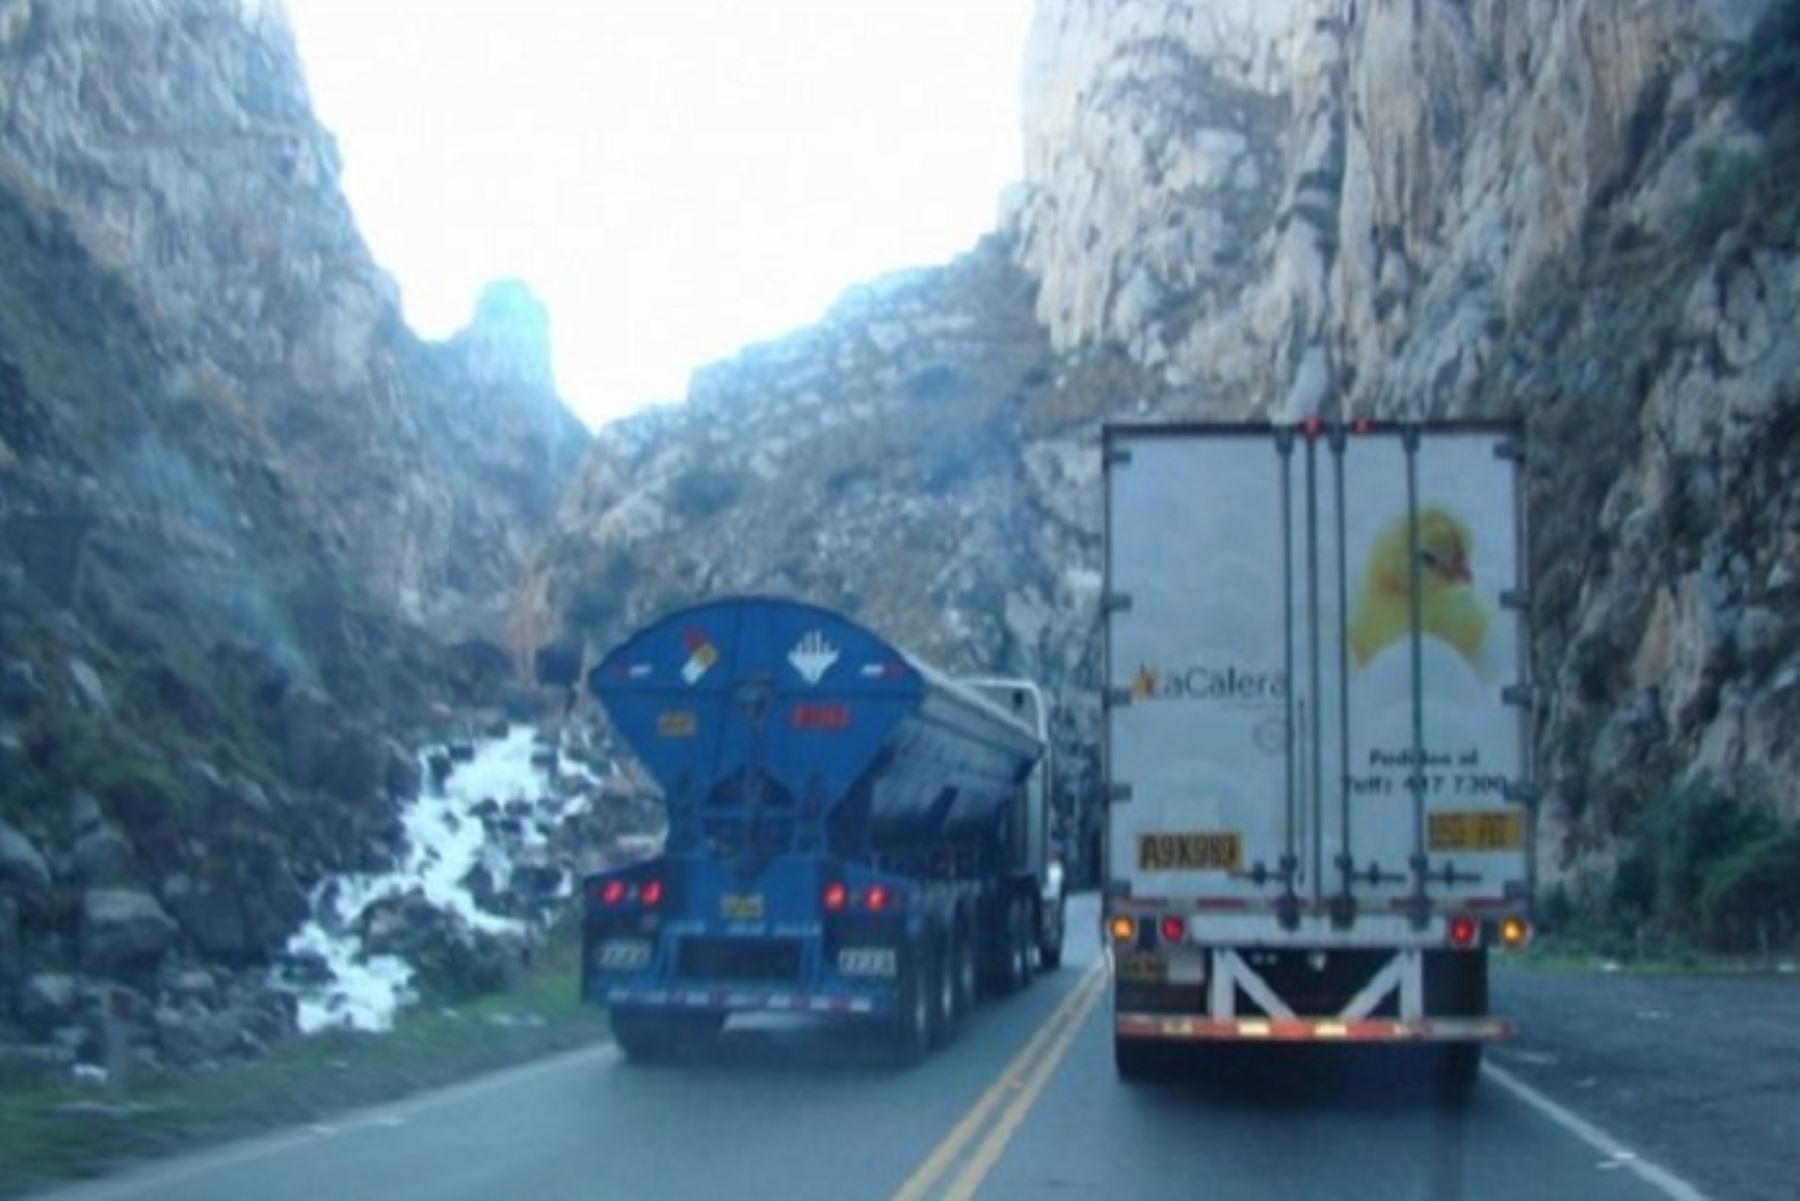 La  carretera Juliaca-Lampa-Huancané se encuentra despejada, por lo que el paso de unidades de transporte se desarrolla con total normalidad, informó la Policía Nacional del Perú (PNP).